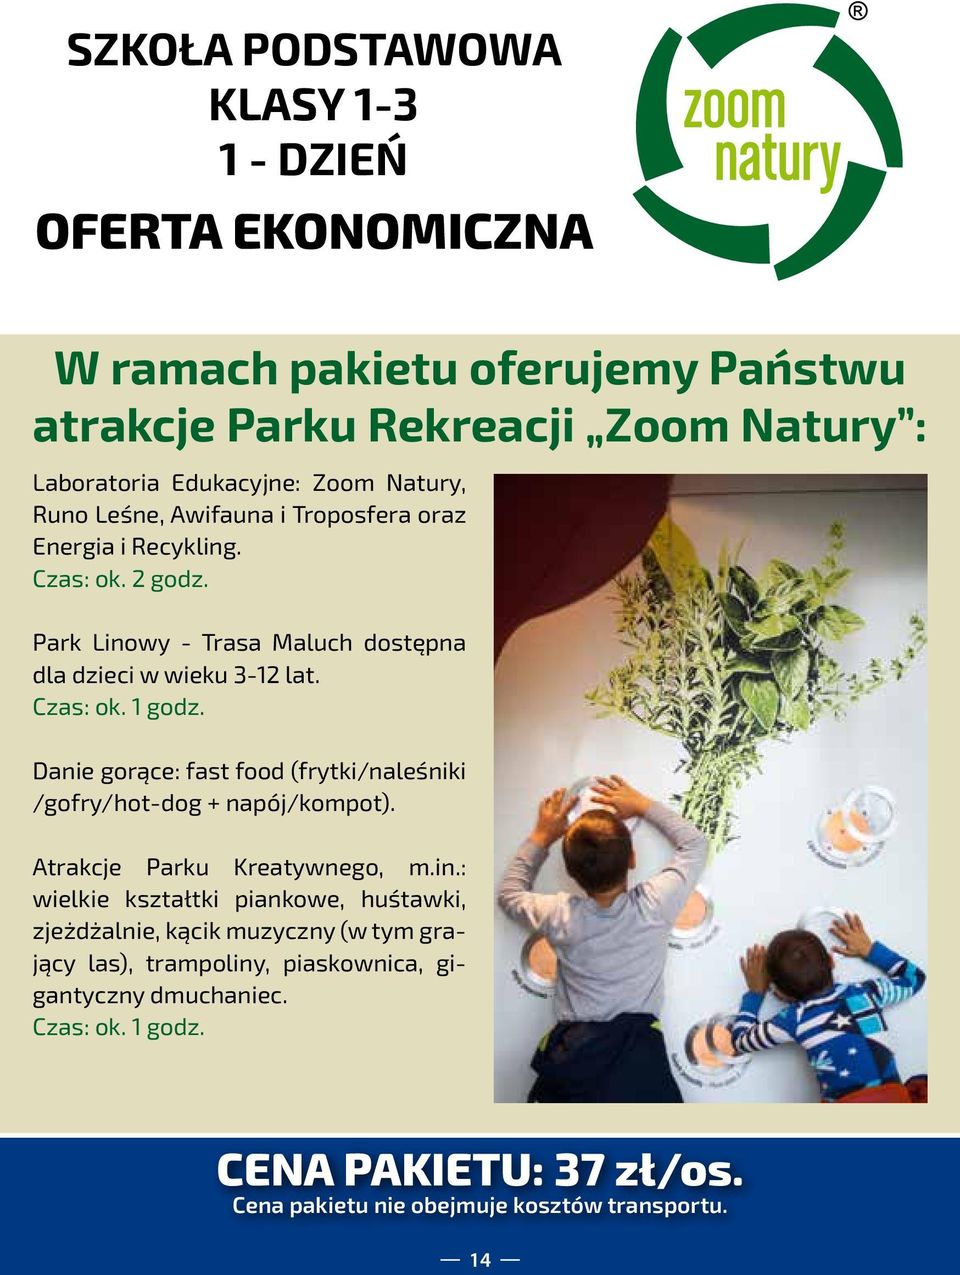 Park Linowy - Trasa Maluch dostępna dla dzieci w wieku 3-12 lat. Danie gorące: fast food (frytki/naleśniki /gofry/hot-dog + napój/kompot).